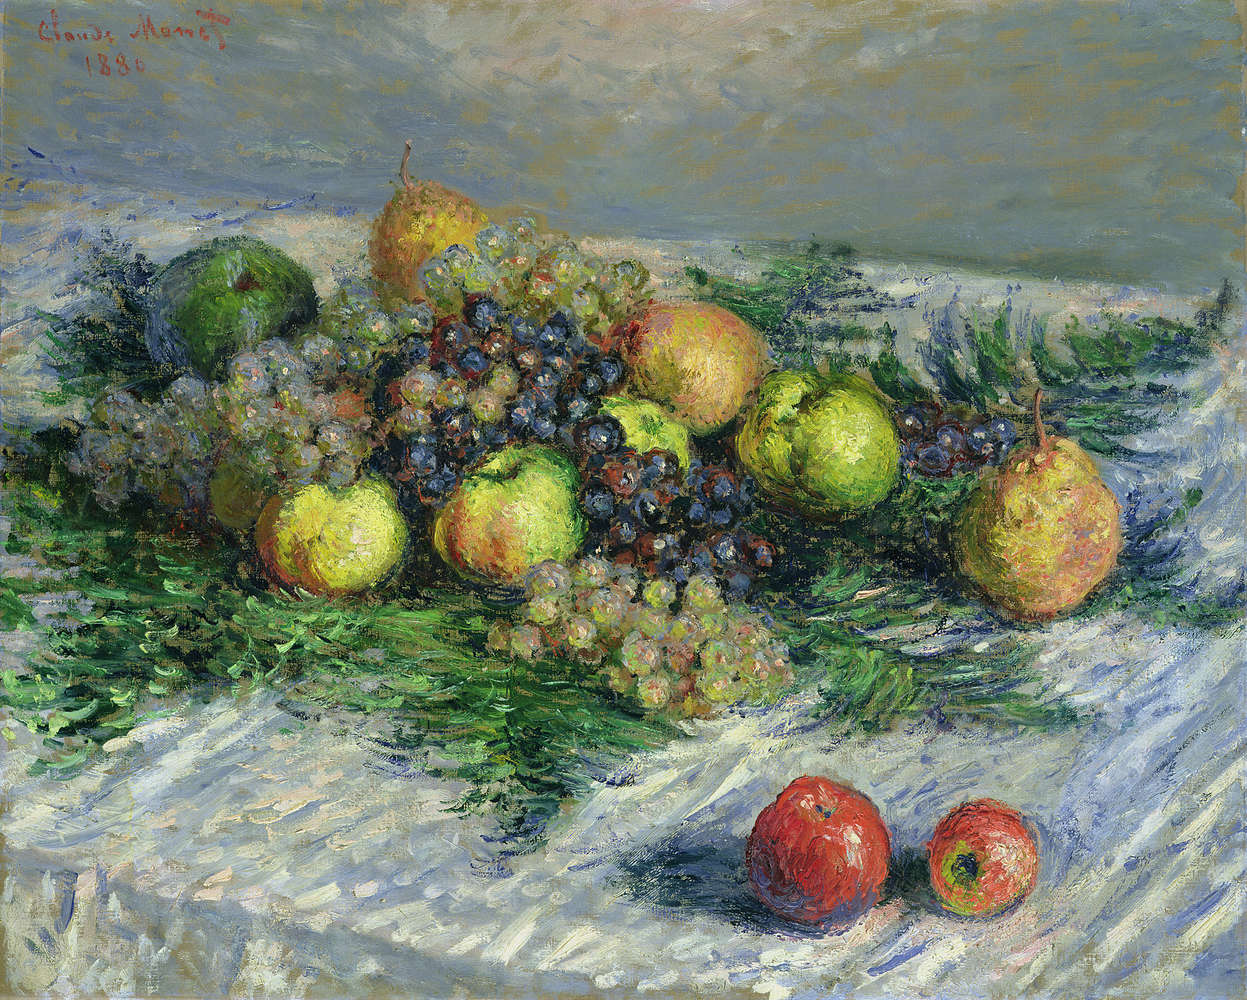             Stilleven met peren en druiven" muurschildering van Claude Monet
        